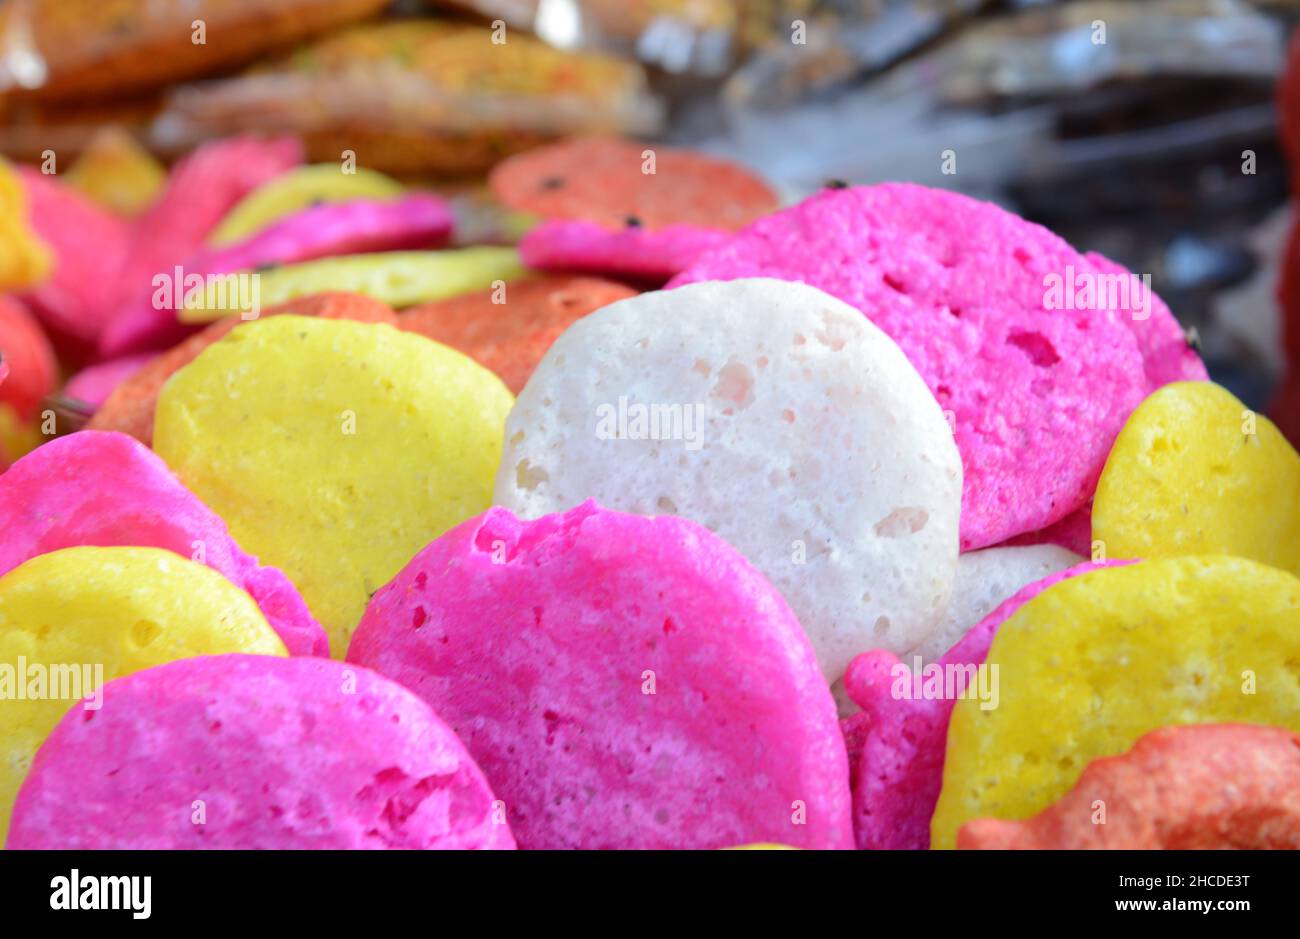 Batthasu Billalu ist eine traditionelle Süßigkeit in Andhra Pradesh, Karnataka und Tamil Nadu. Es besteht aus Zucker und Lebensmittelfarben. Stockfoto